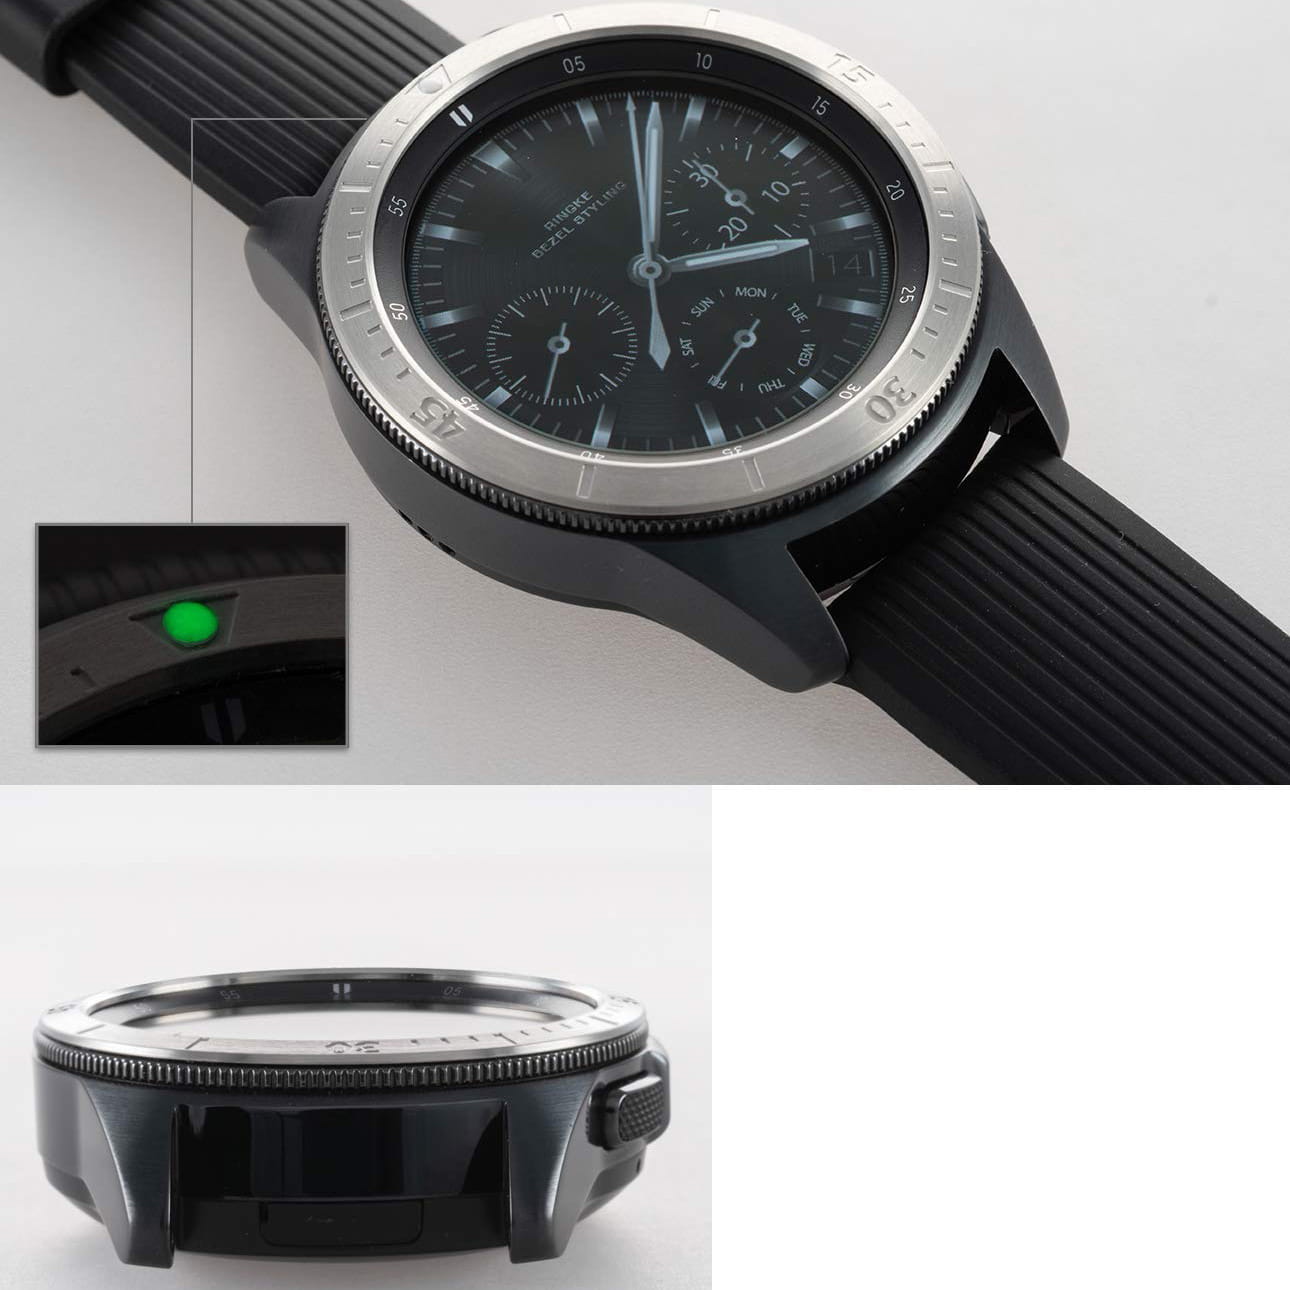 Originaler Rahmen Ringke aus der Bezel Styling Stainless Steel Serie für Galaxy Watch 42mm, silbern.